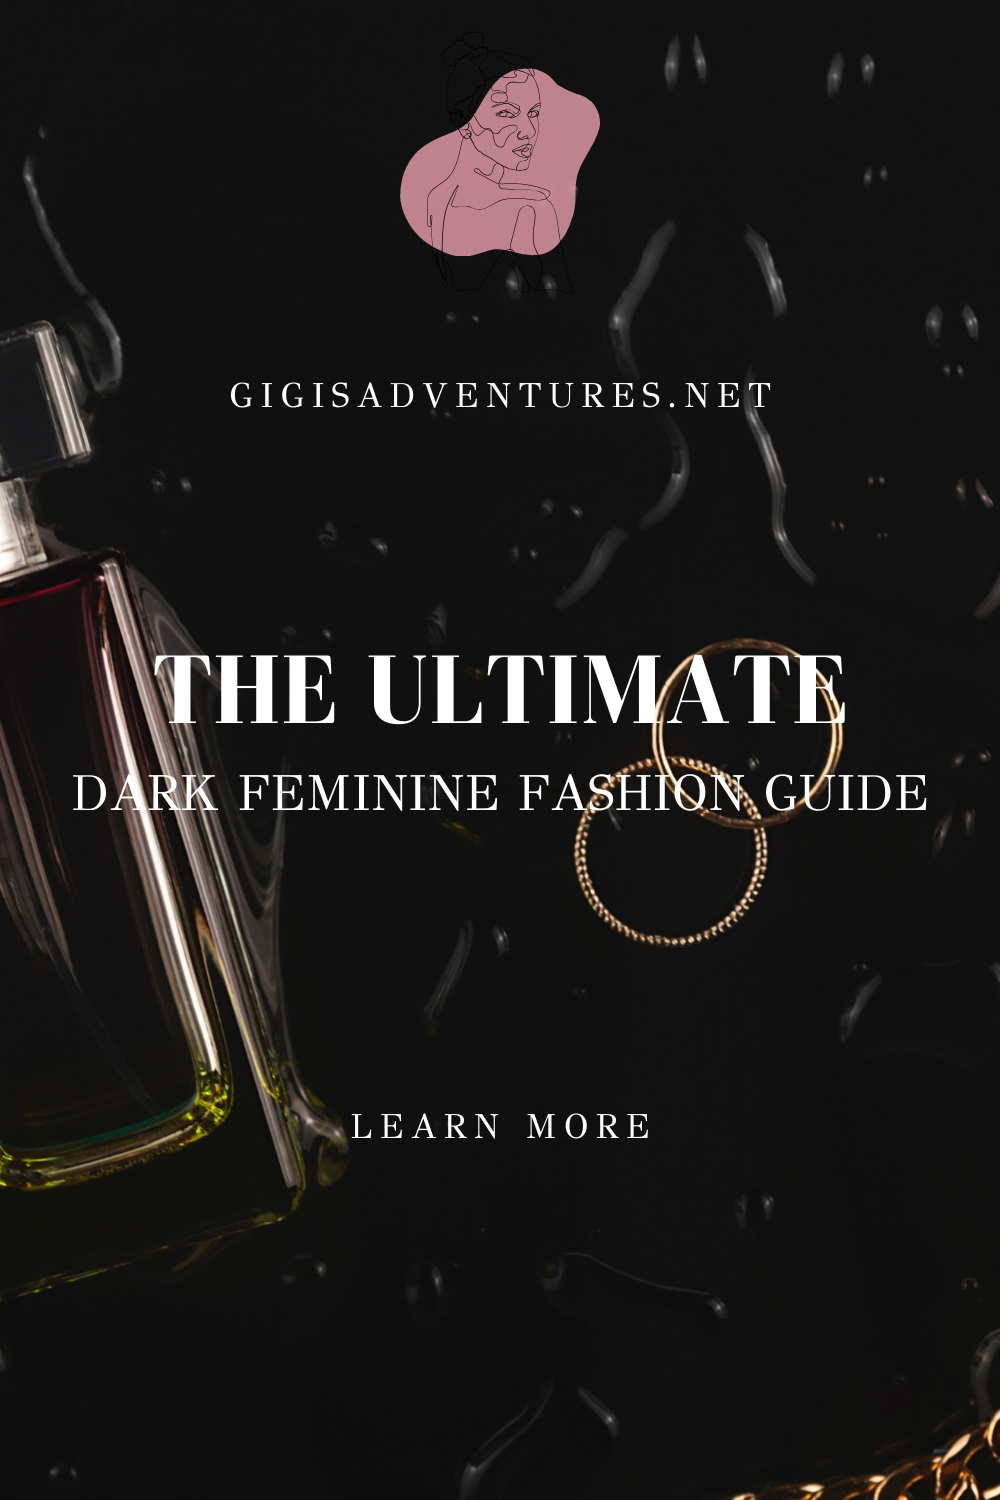 The Ultimate Dark Feminine Fashion Guide